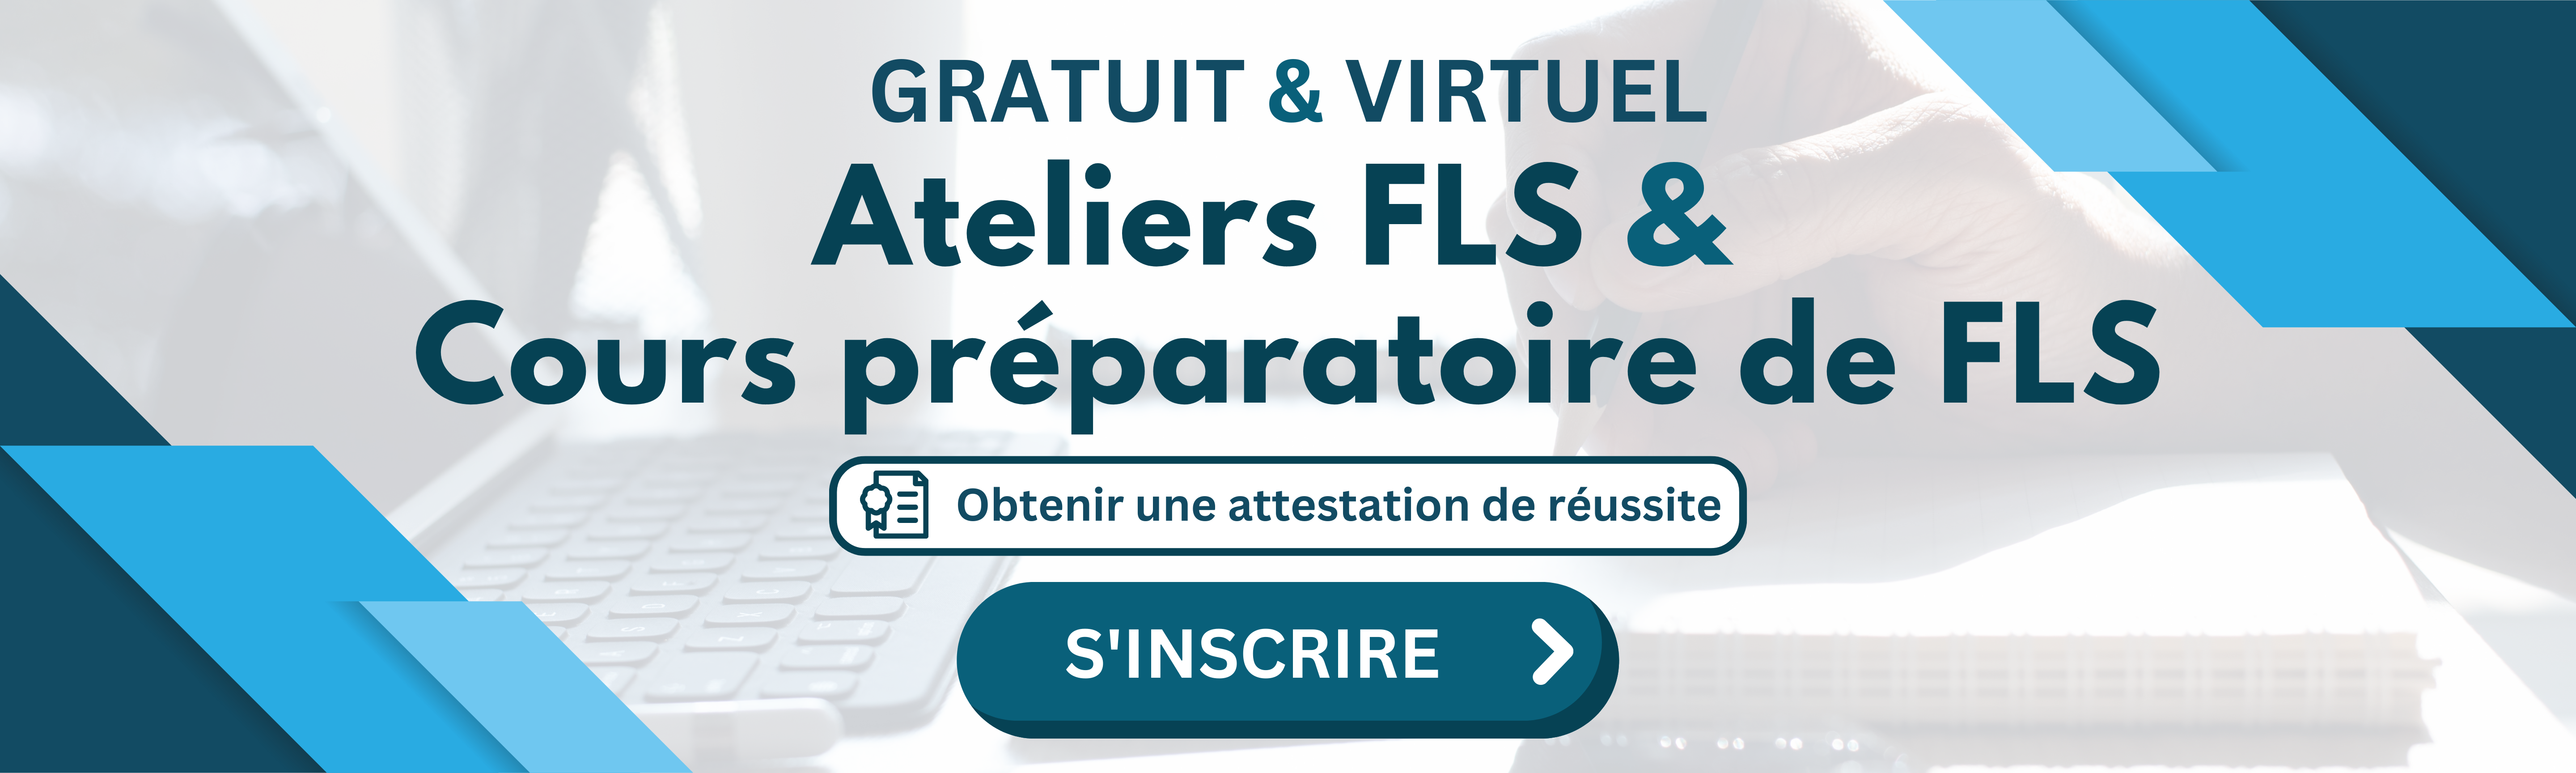 Ateliers FLS & Cours préparatoire de FLS